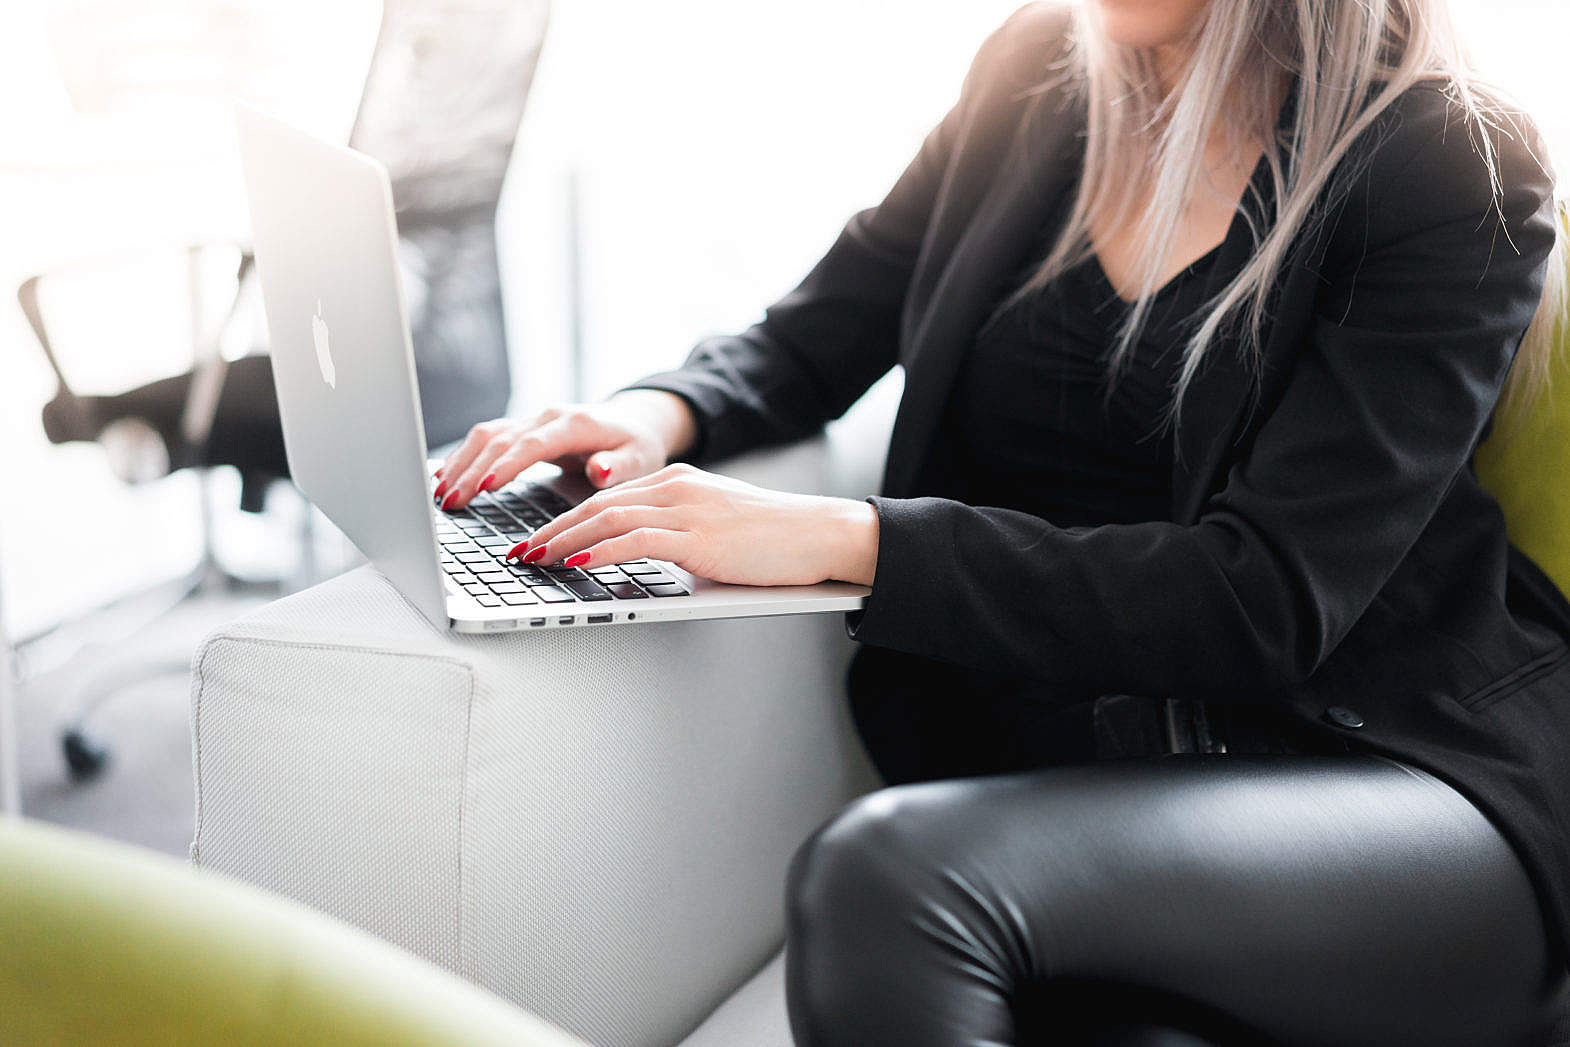 Afiliado-de-produtos-digitais 8 ideias lucrativas para ganhar dinheiro online trabalhando em casa